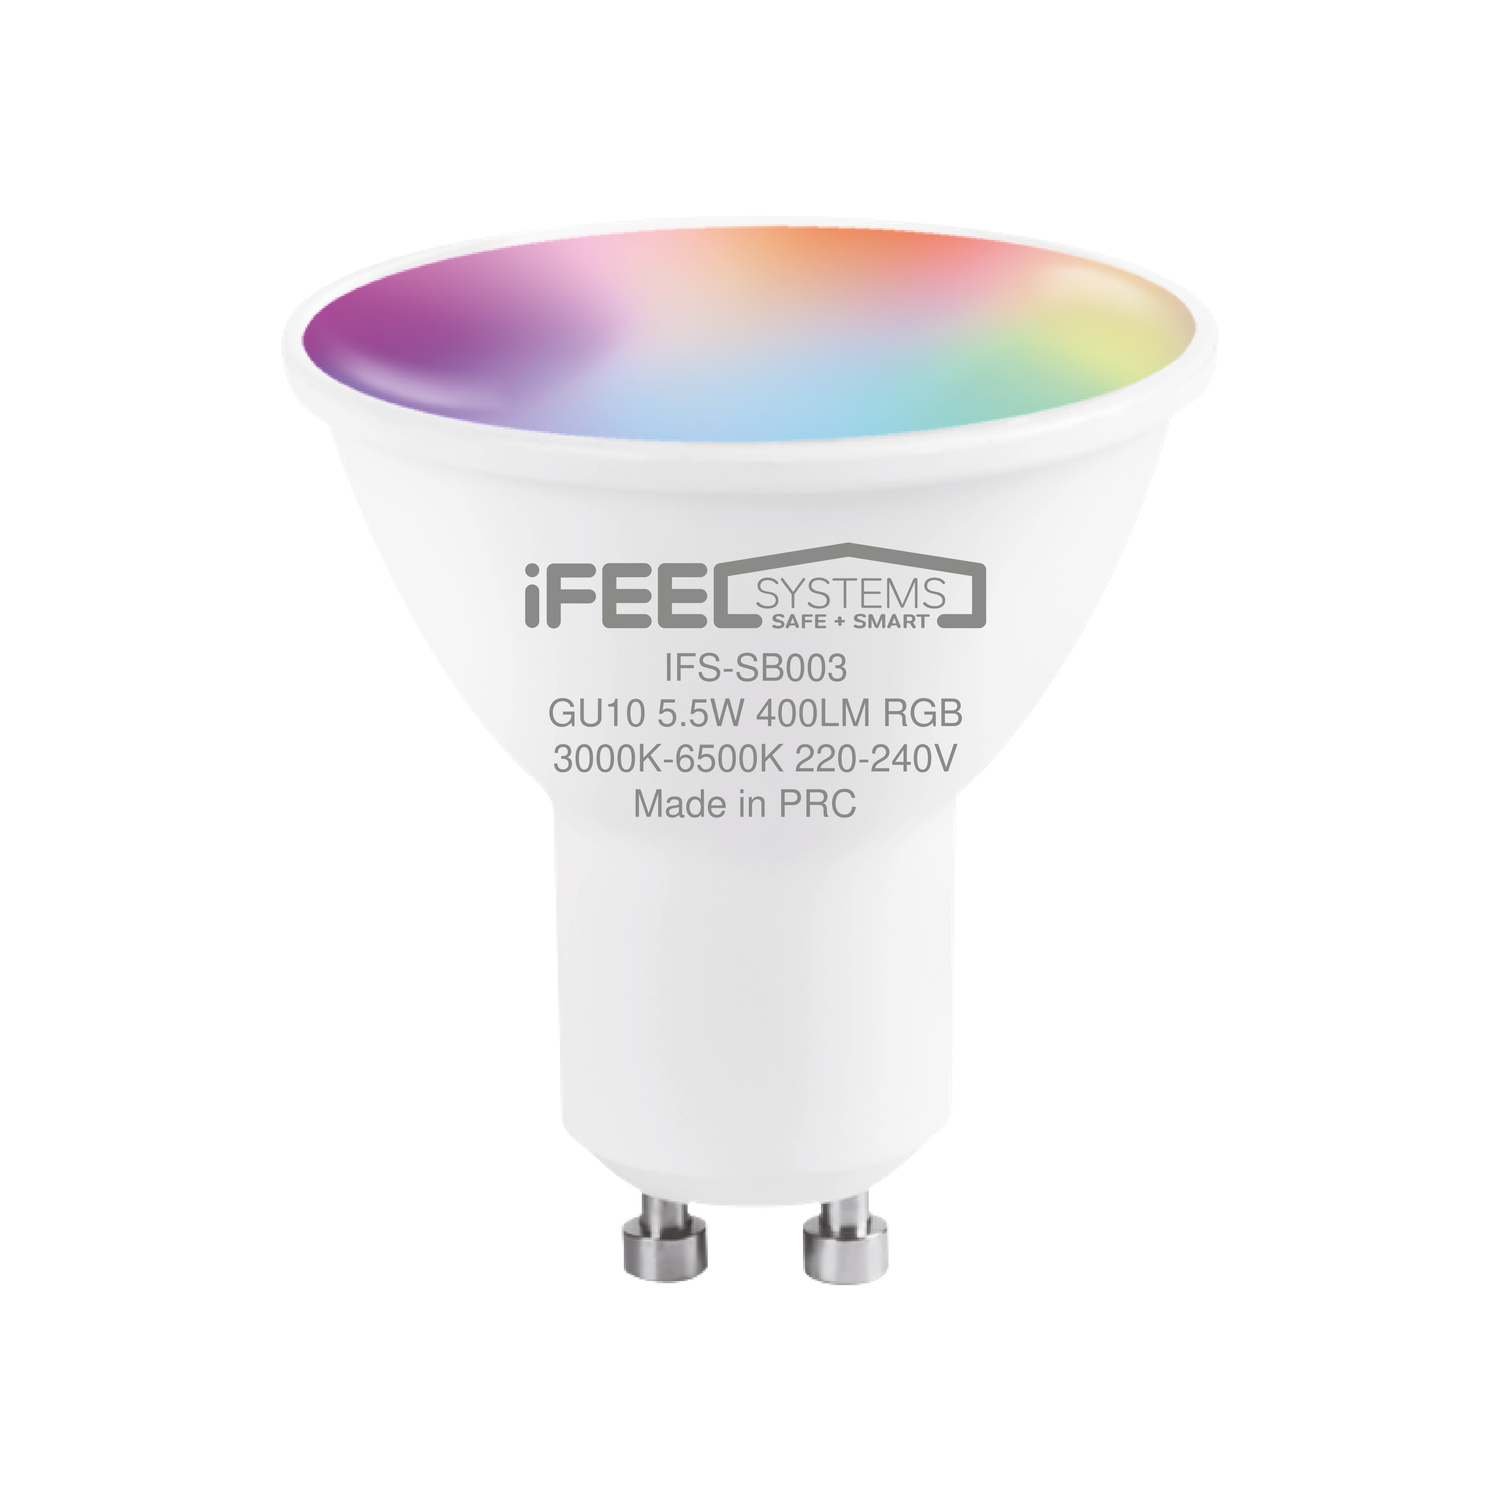 Умная лампочка iFEEL Spot GU10 RGB с Wi-Fi Алисой - фото 1